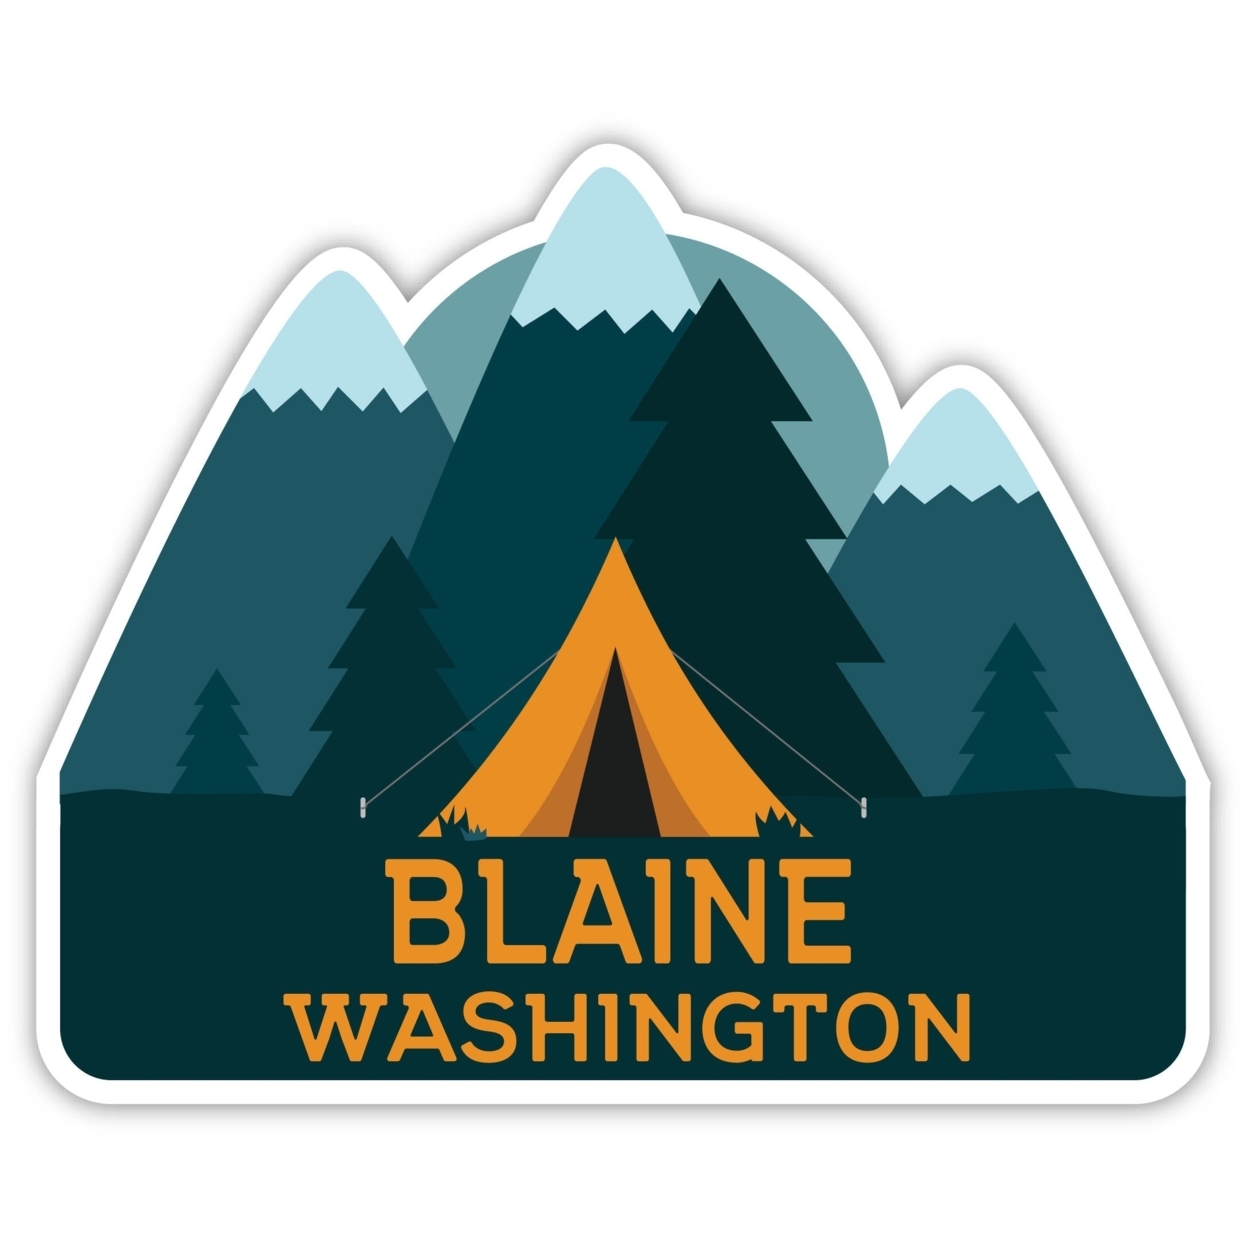 Blaine Washington Souvenir Decorative Stickers (Choose Theme And Size) - Single Unit, 8-Inch, Tent